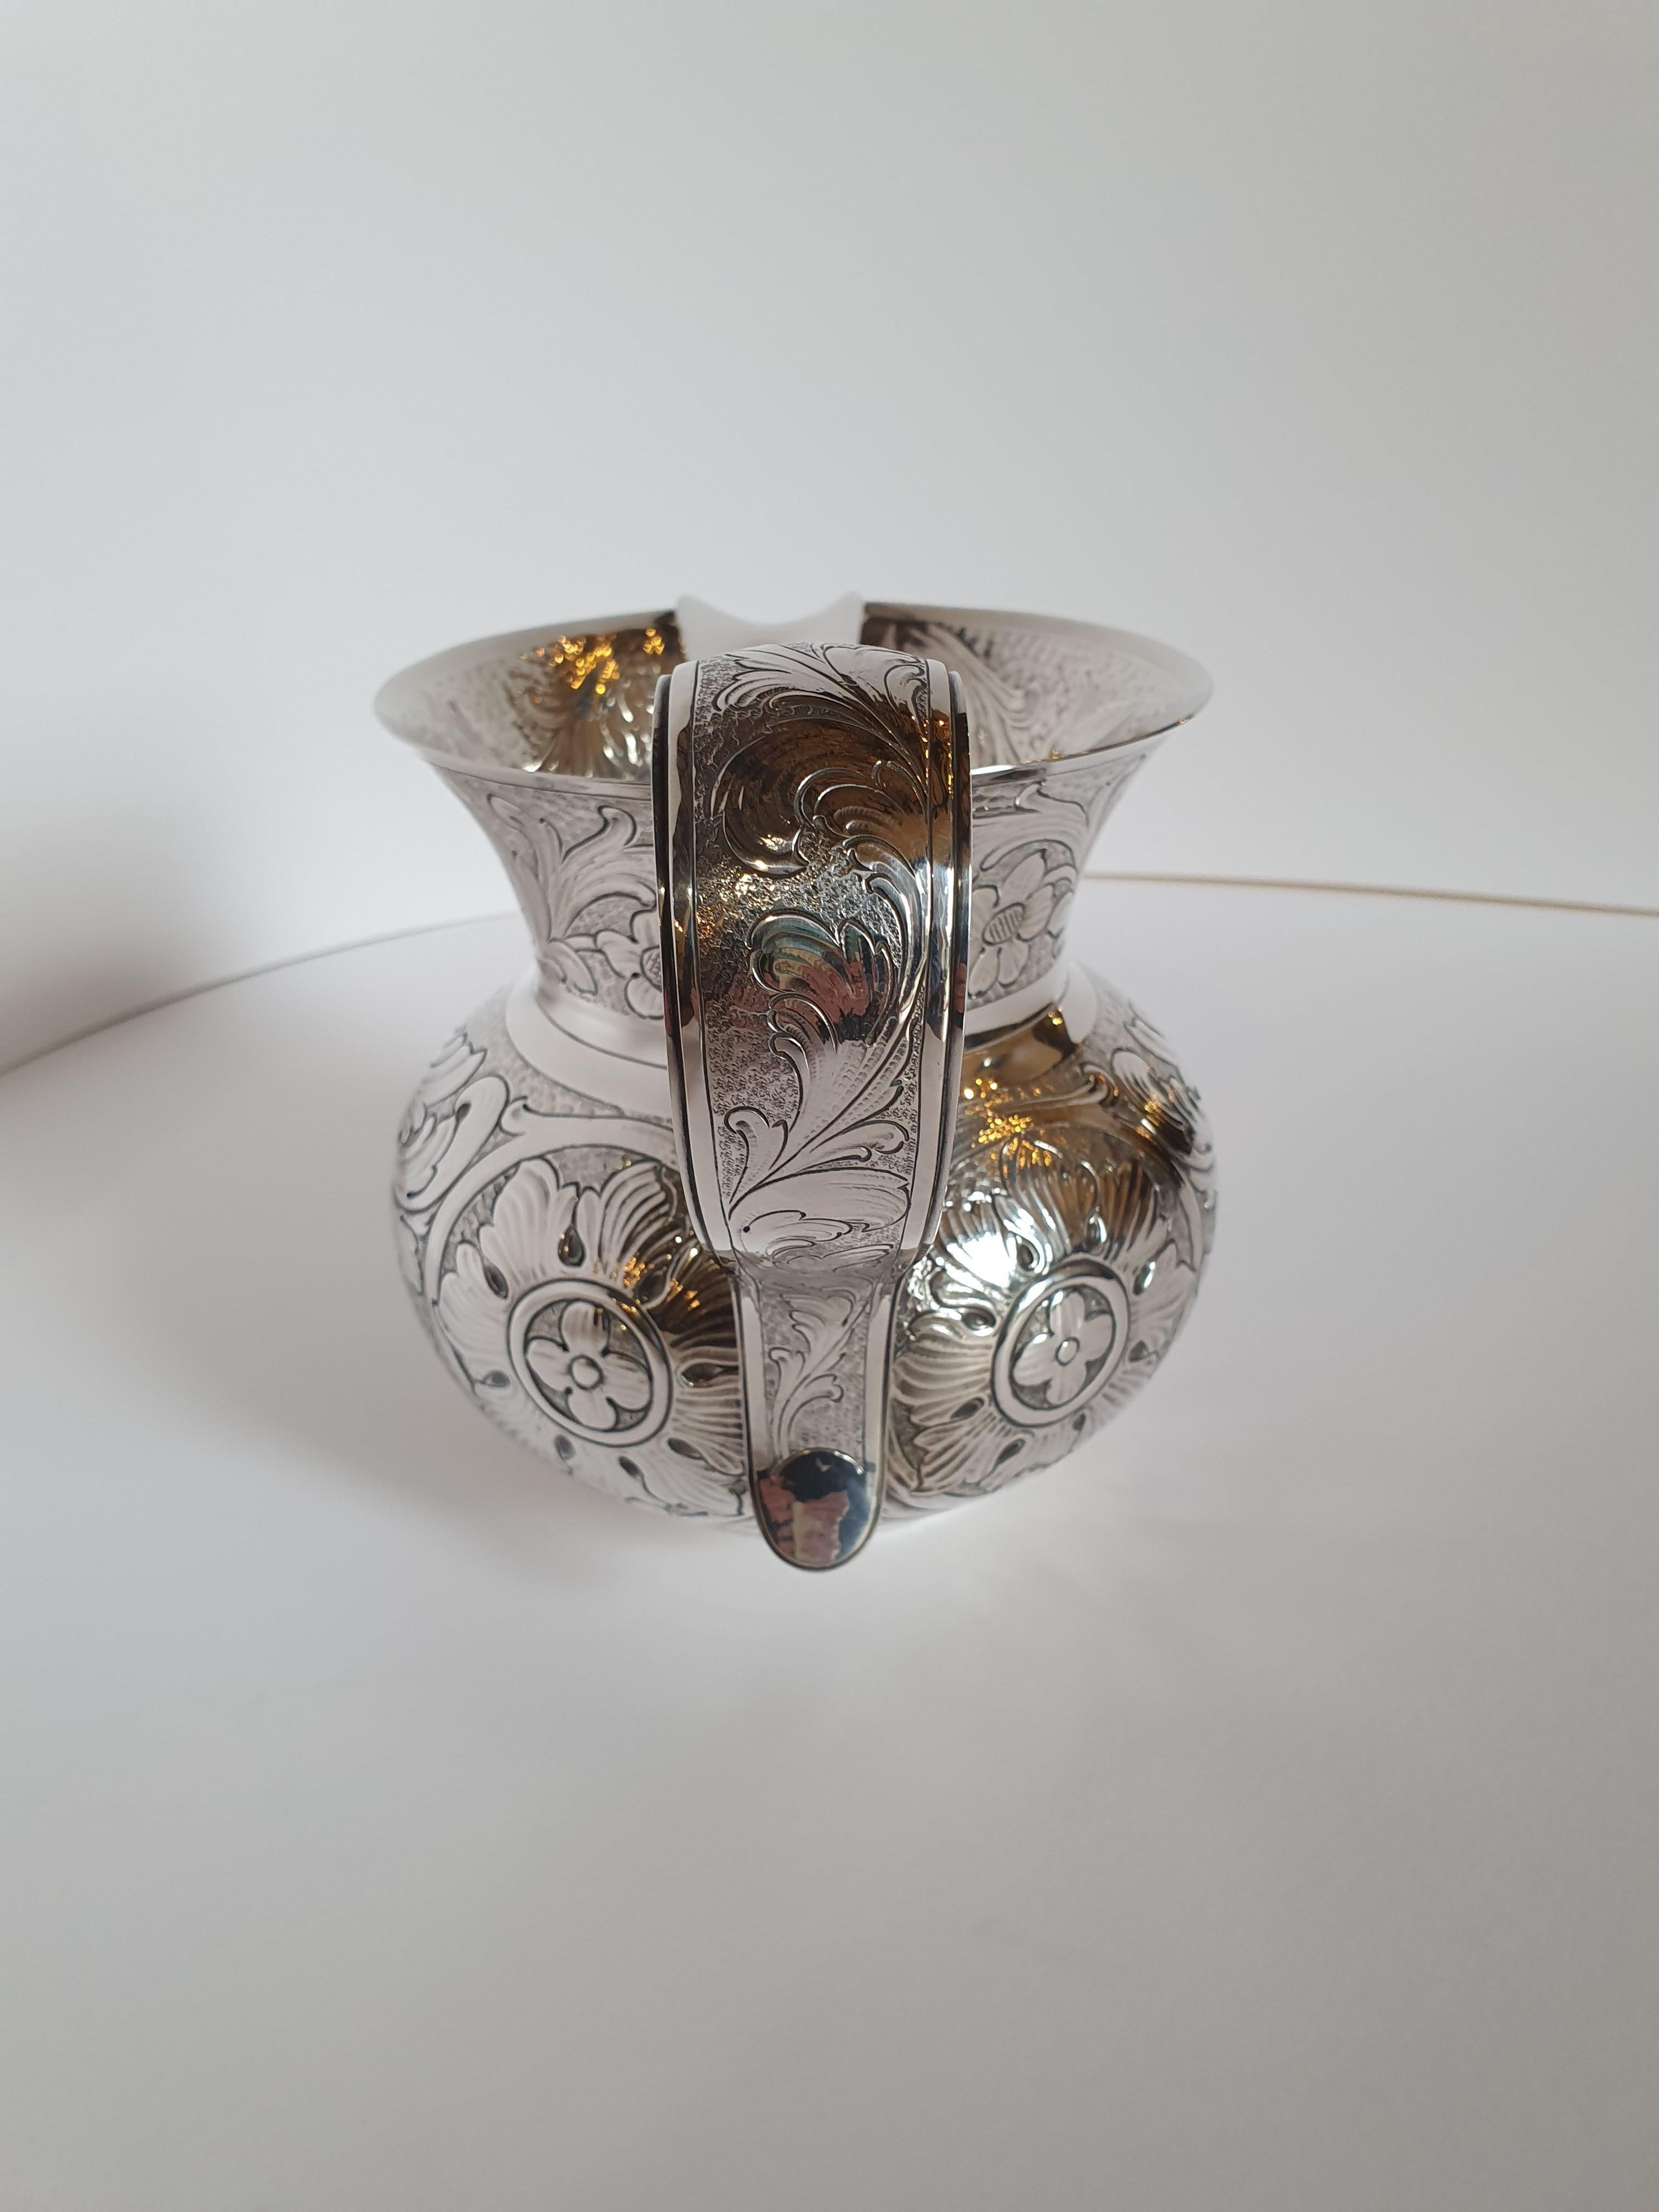 Wunderschöner handgefertigter Wasserkrug aus Sterlingsilber, inspiriert von einem Stück aus der Sammlung des Museo Poldi Pezzoli in Mailand.
Die unvergleichliche Meißelarbeit gibt das für das 17. Jahrhundert typische Motiv mit Blättern und Blumen